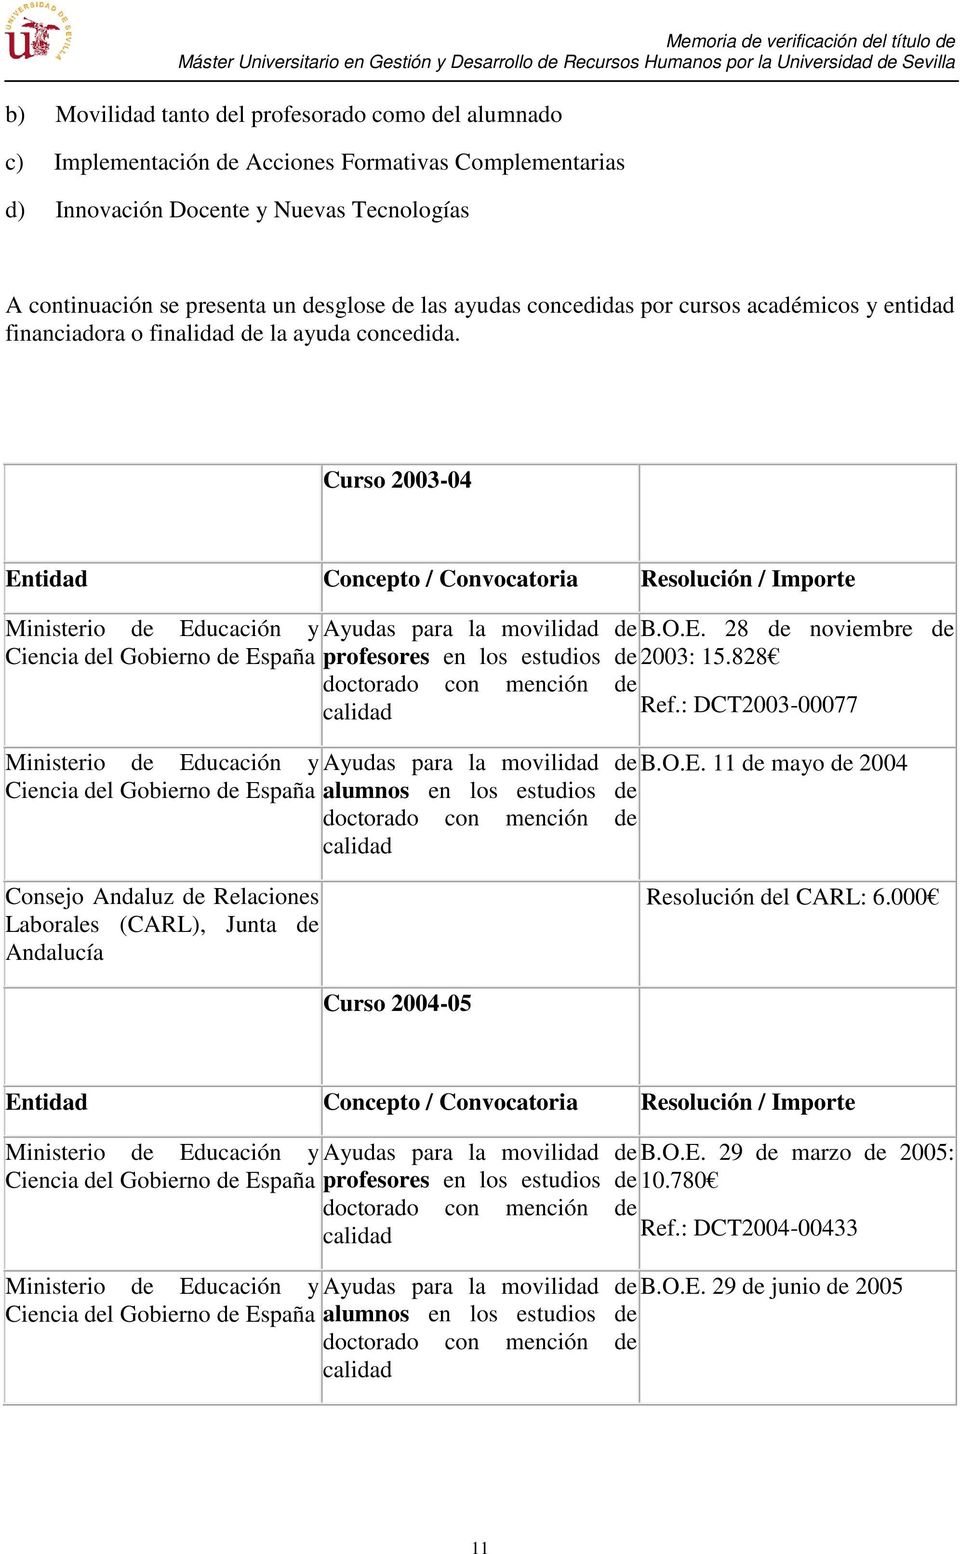 Curso 2003-04 Entidad Concepto / Convocatoria Resolución / Importe Ministerio de Educación y Ayudas para la movilidad de B.O.E. 28 de noviembre de Ciencia del Gobierno de España profesores en los estudios de 2003: 15.